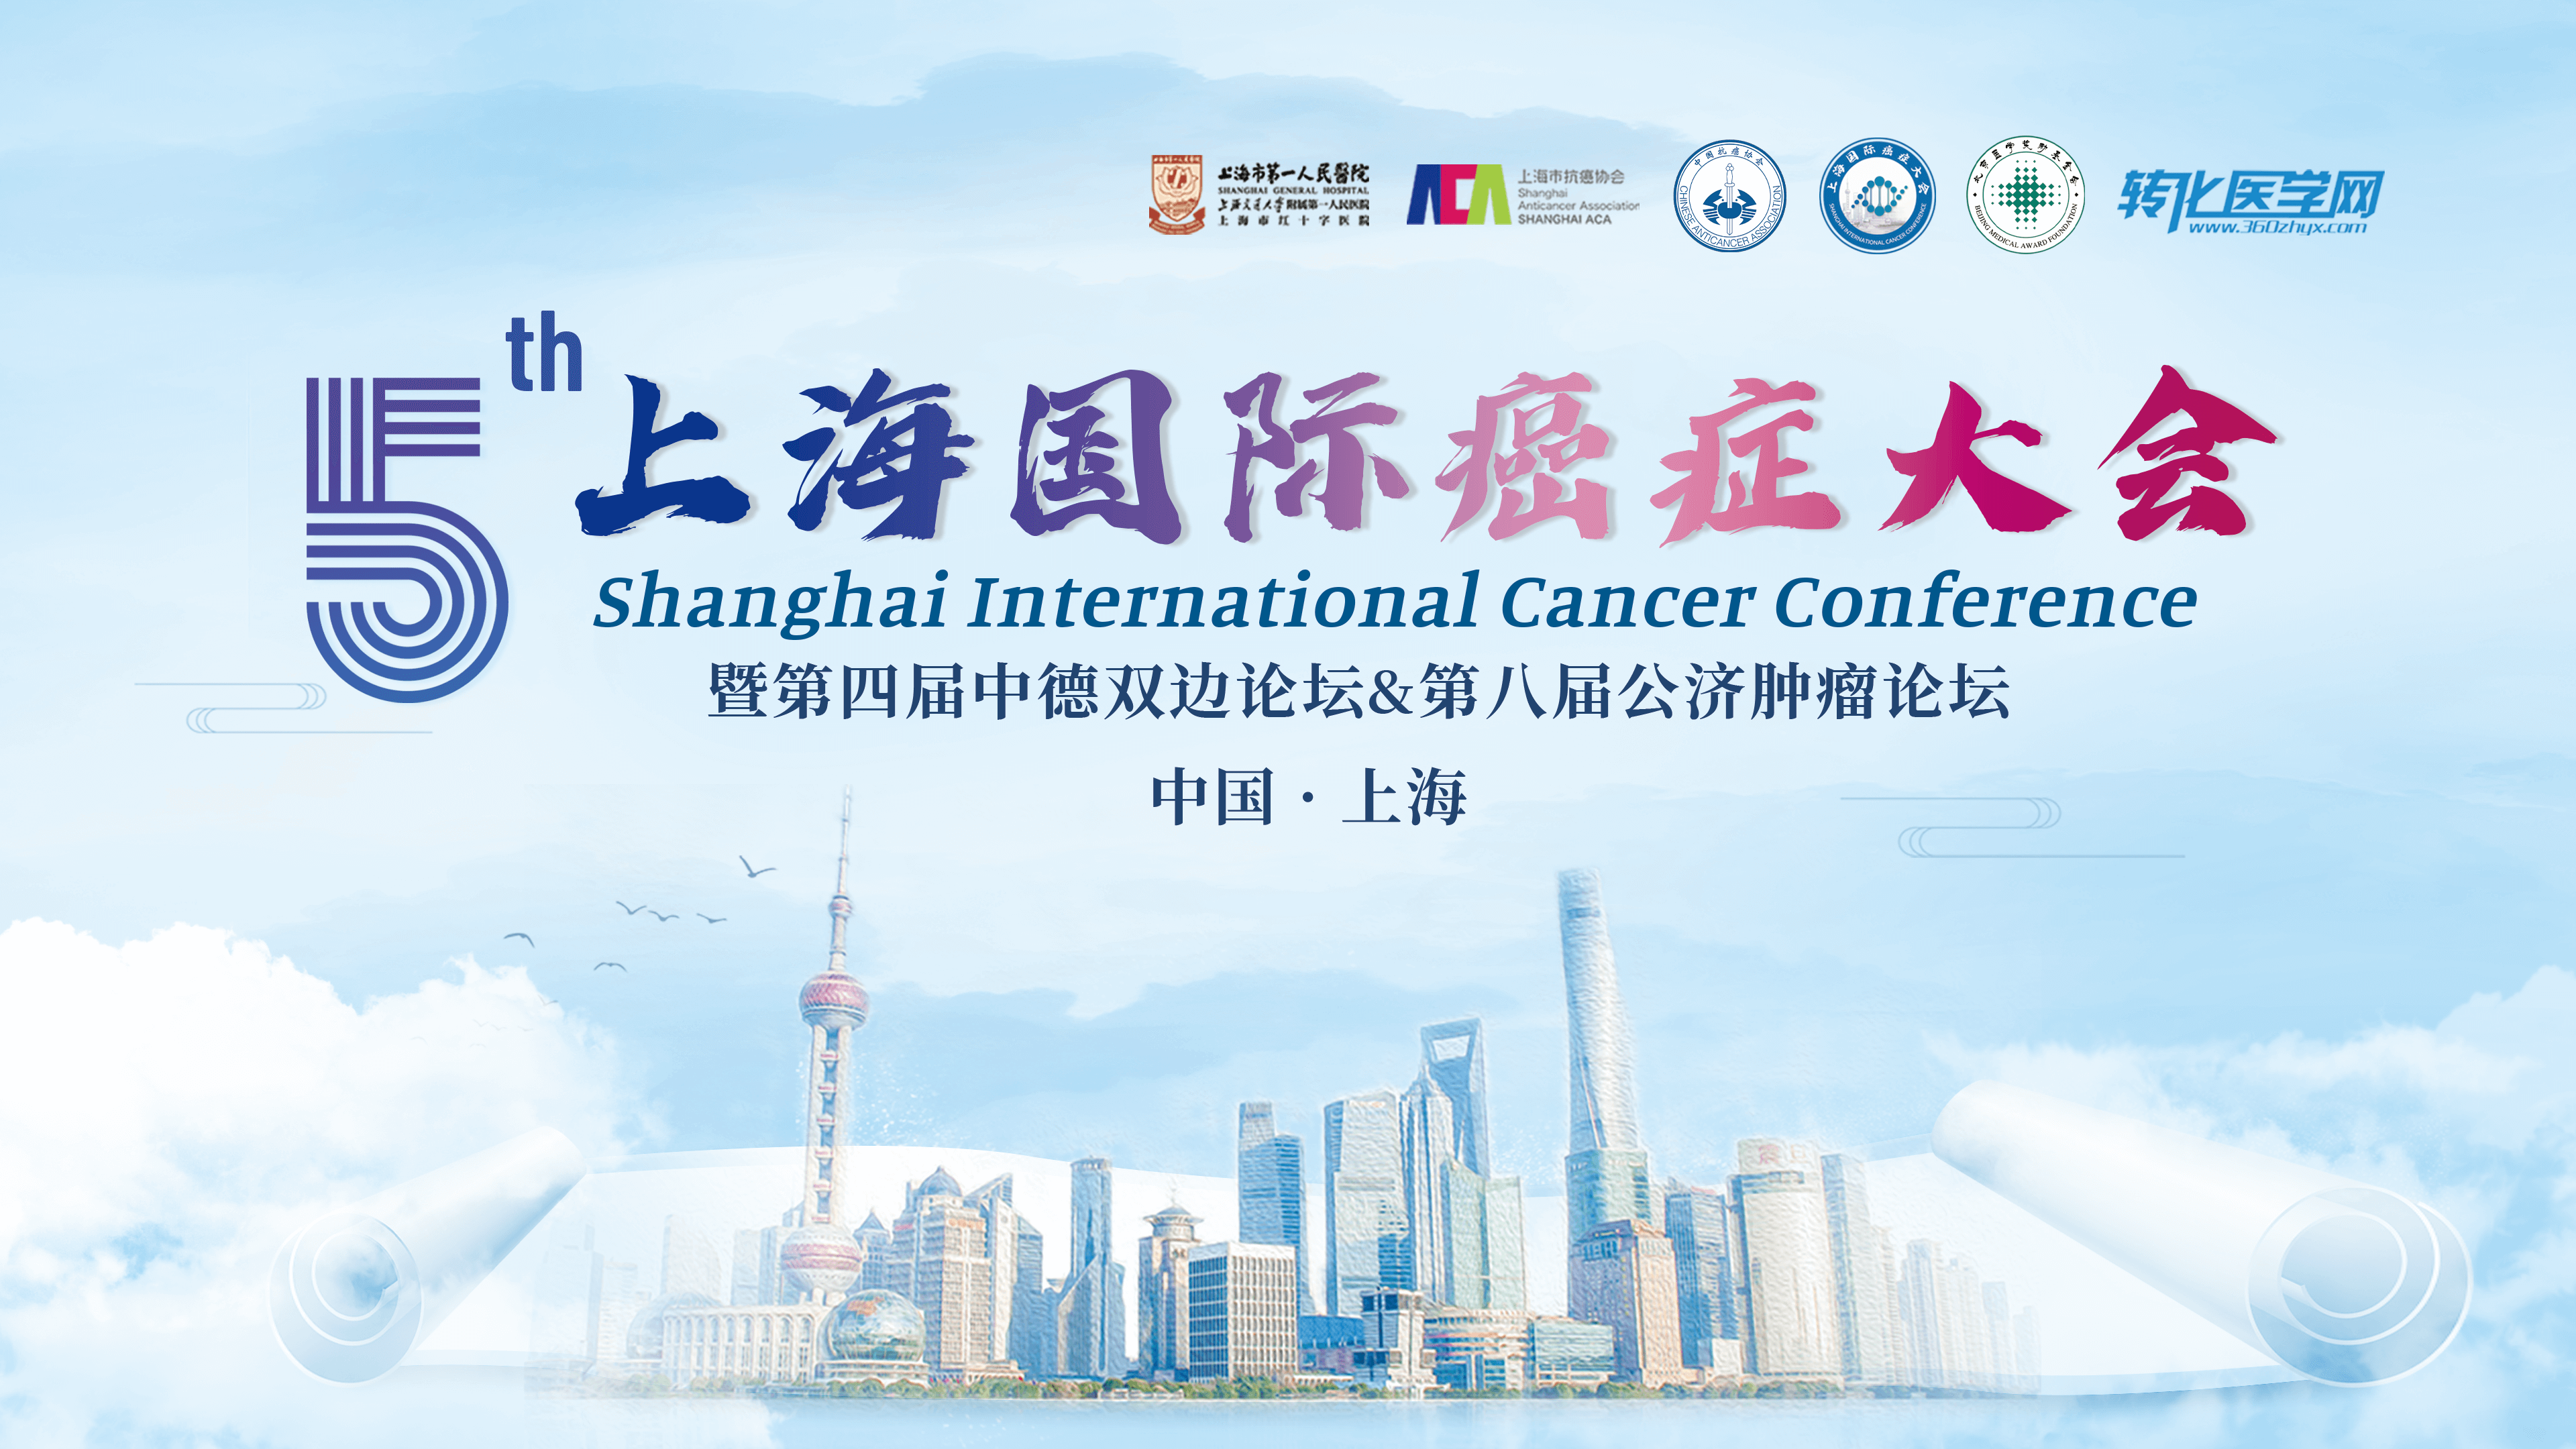 会议通知 |思百拓邀您共赴第五届上海国际癌症大会